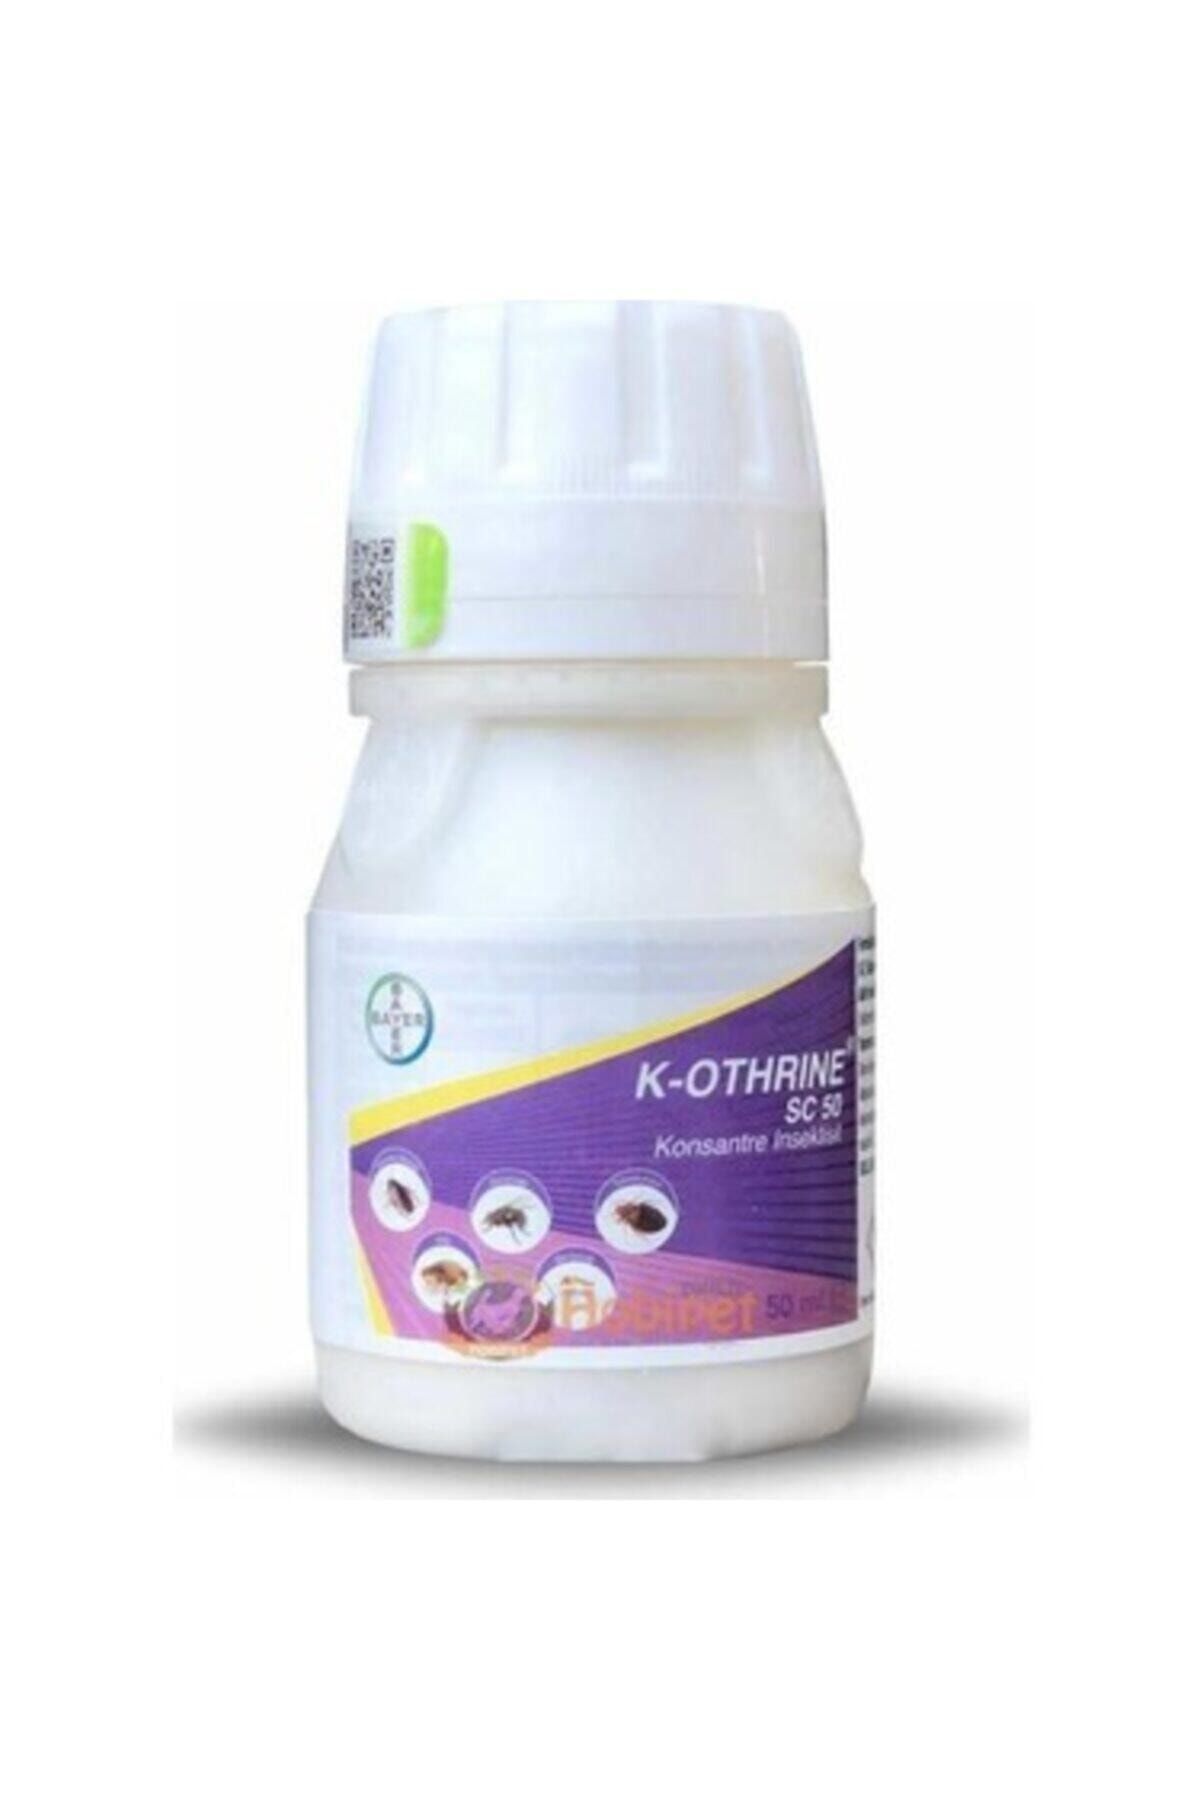 Bayer K-othrine 50 ml